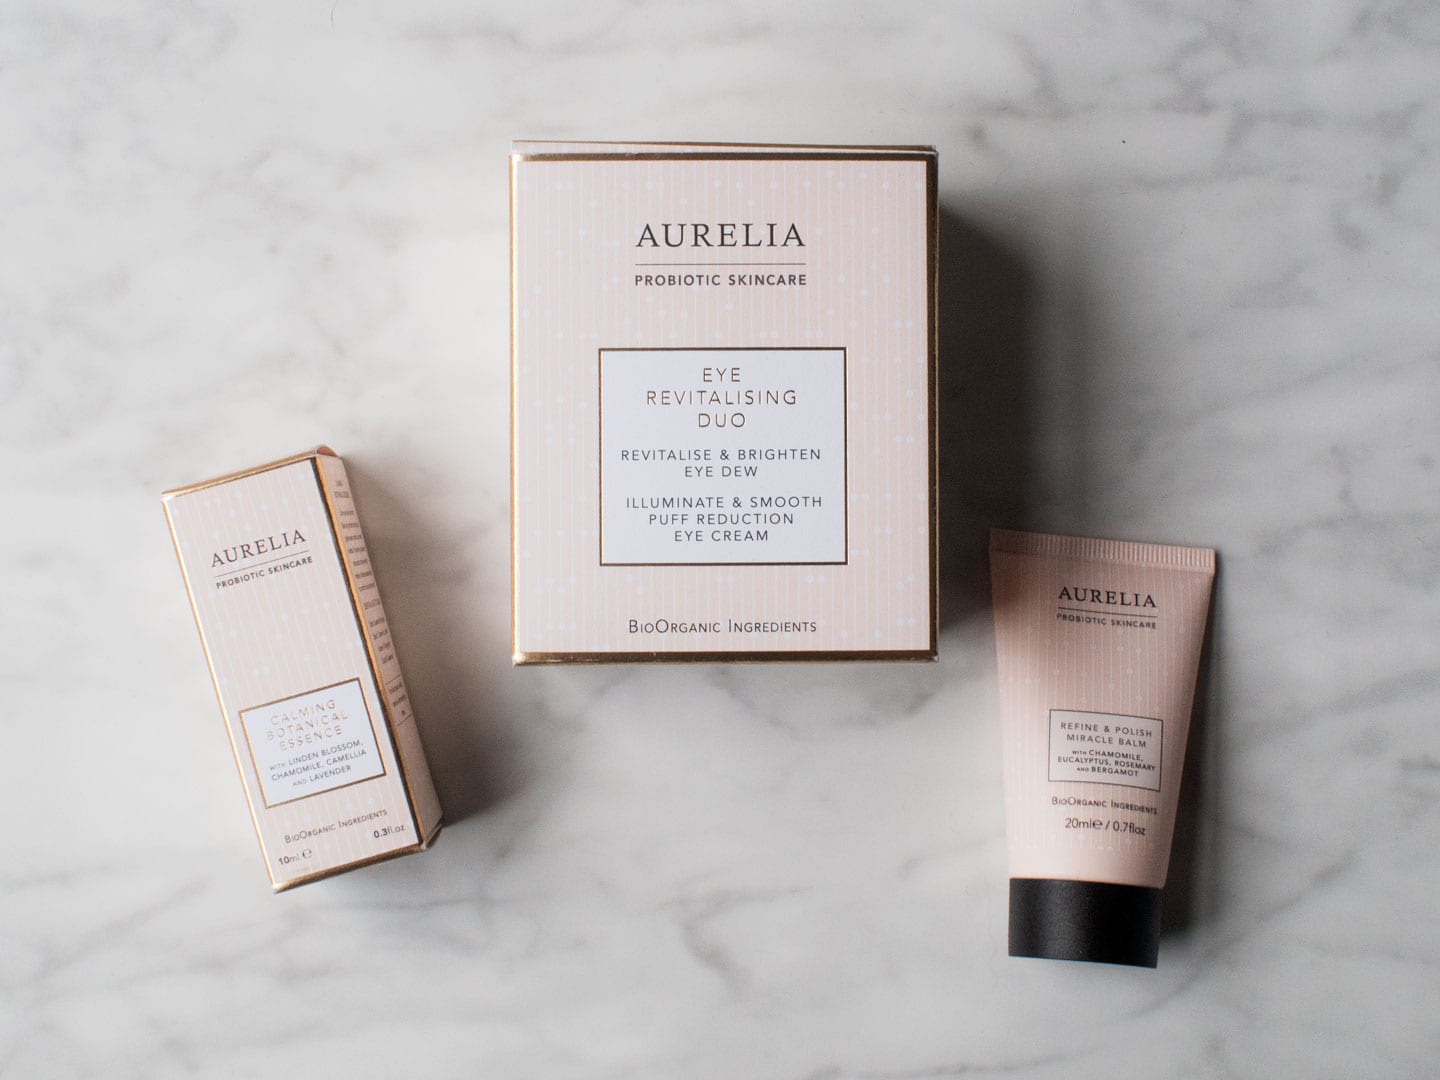 Aurelia Probiotic Skincare Review